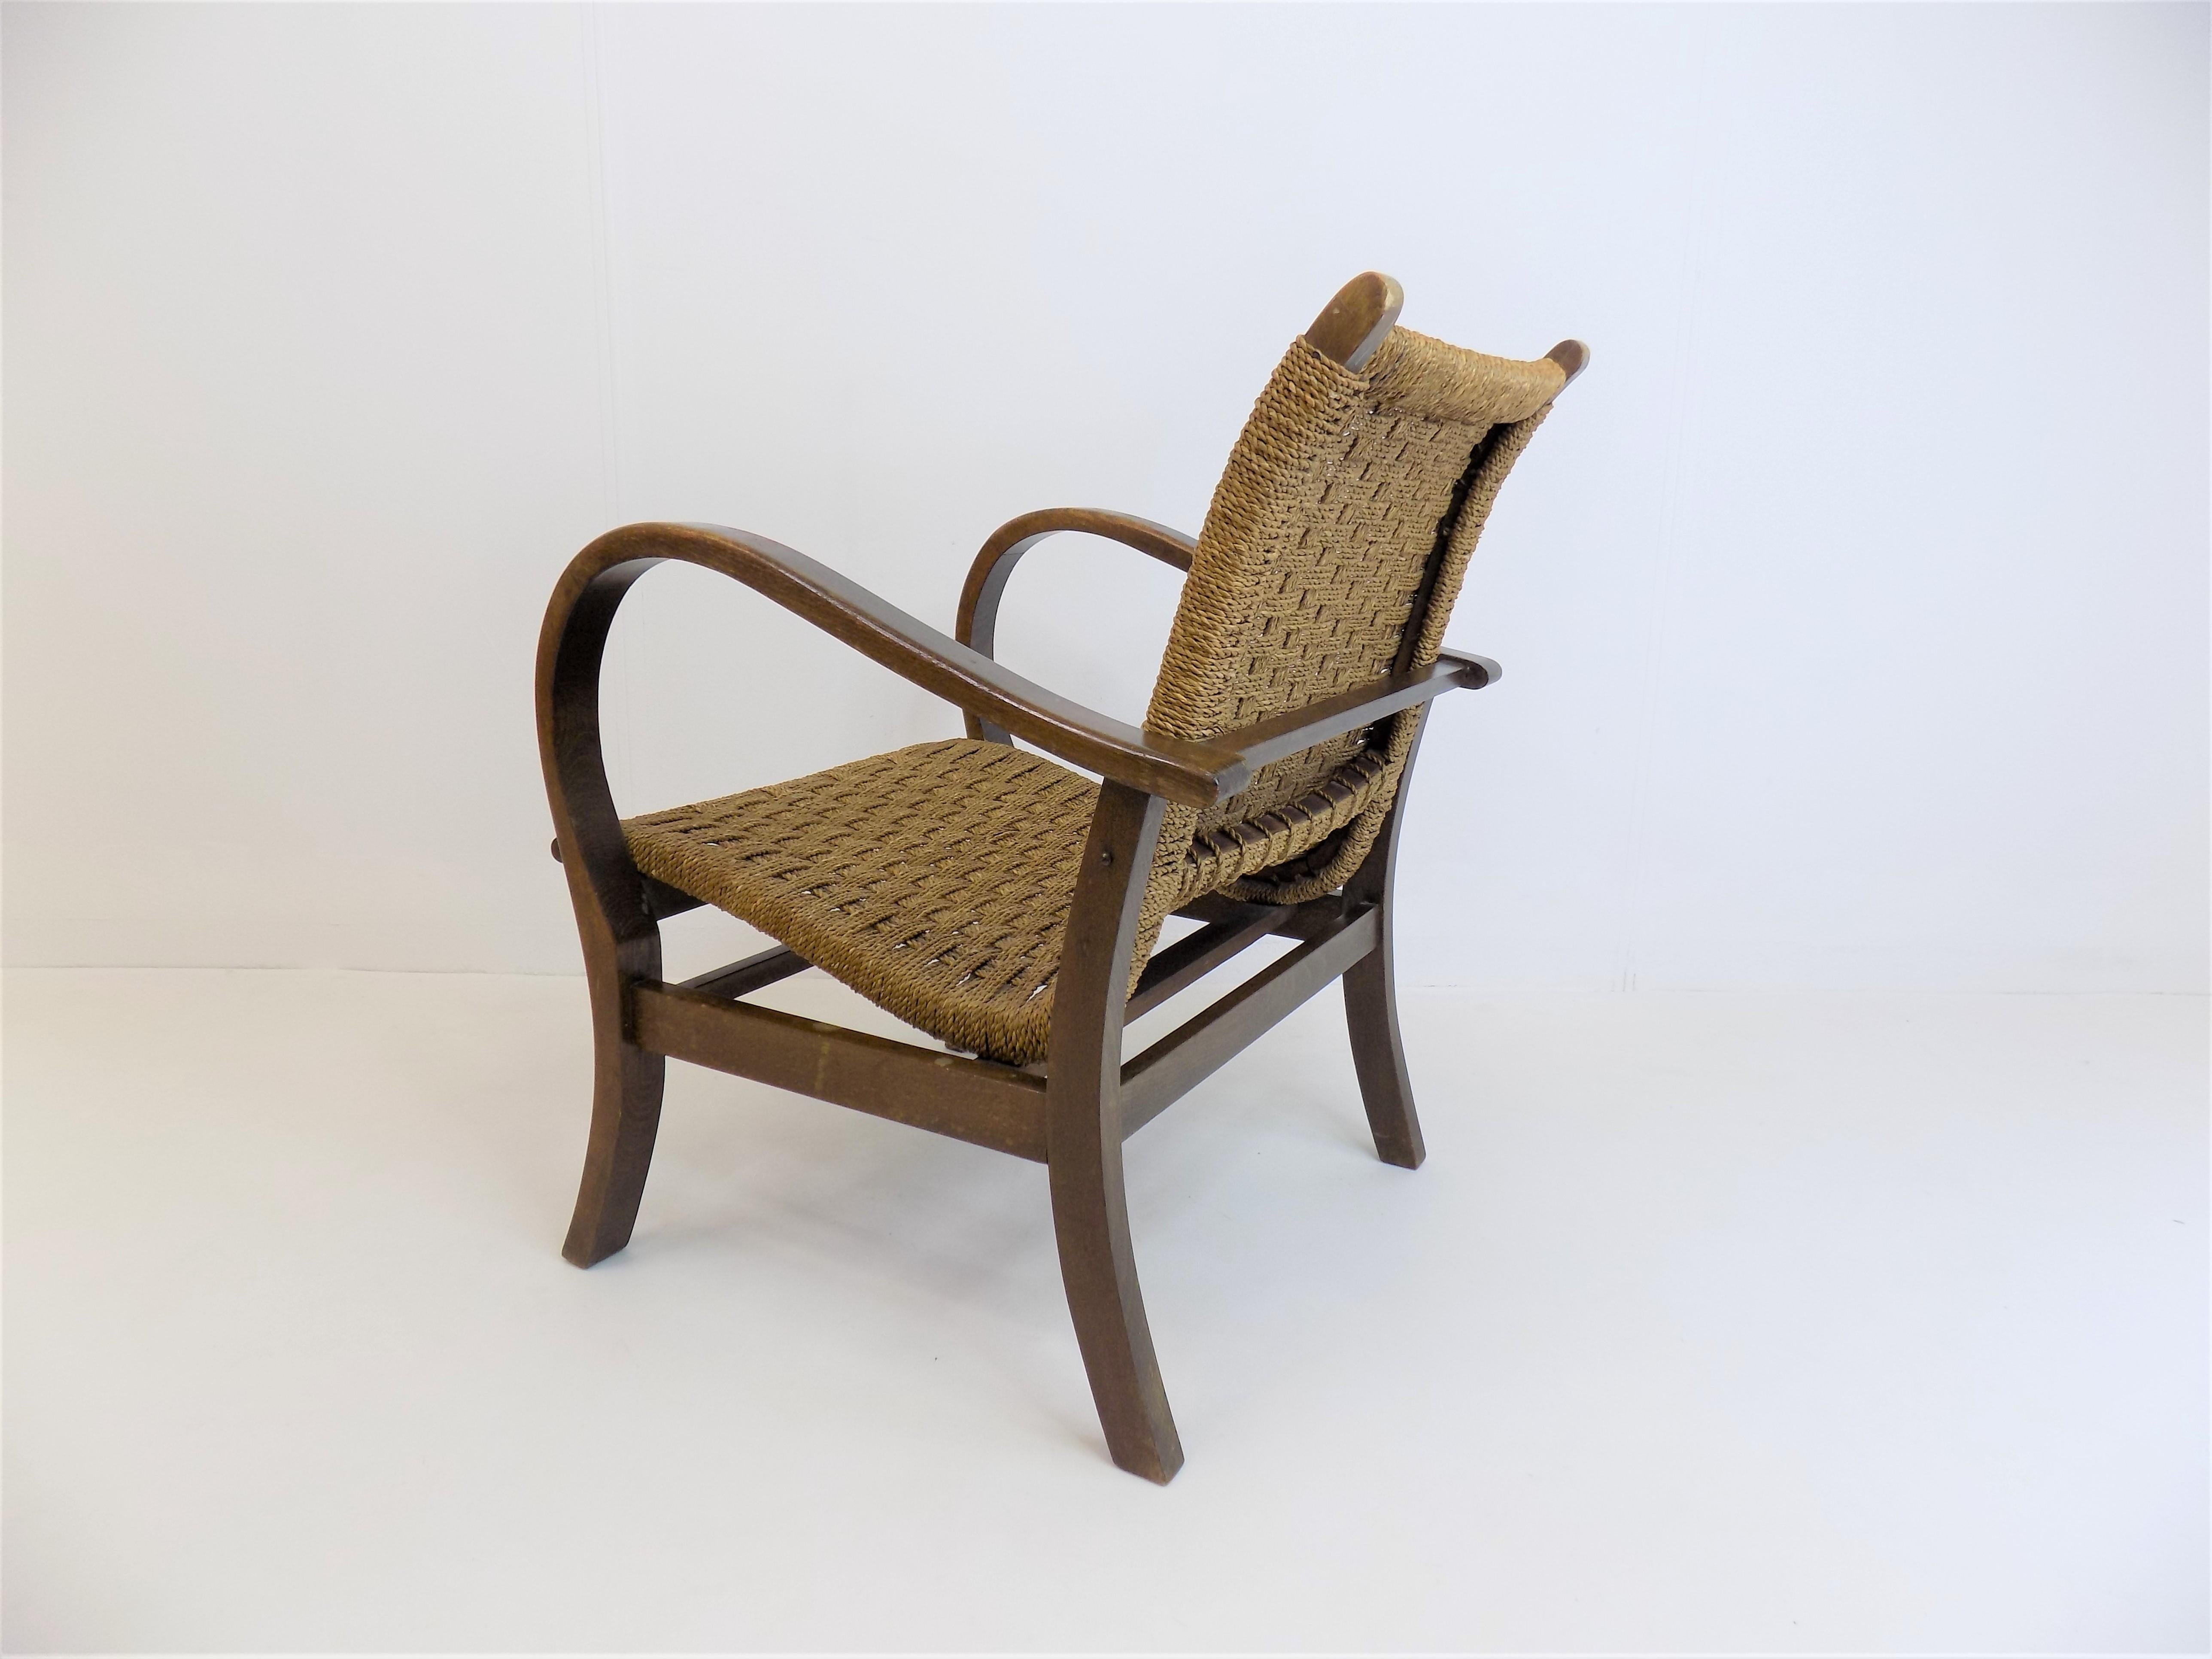 Ce classique parmi les chaises Bauhaus est en excellent état. Le tressage du jonc est impeccable et solide, le cadre en bois foncé présente une patine attrayante. La chaise permet une assise très confortable.

 

Erich Dieckmann a conçu ce fauteuil